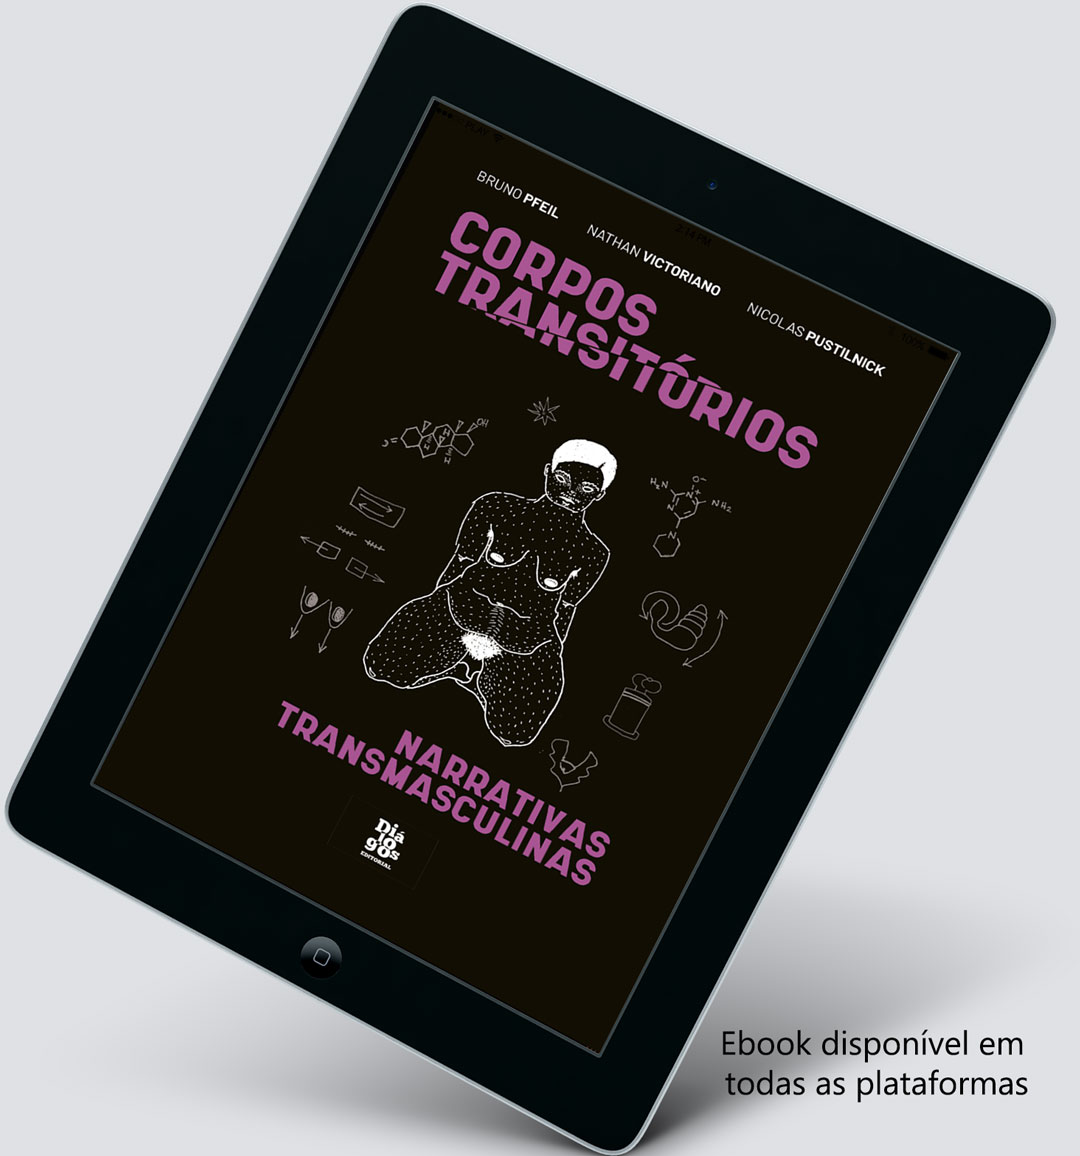 Corpos Transitórios: narrativas transmasculinas é lançado em e-book na amazon e demais plataformas.